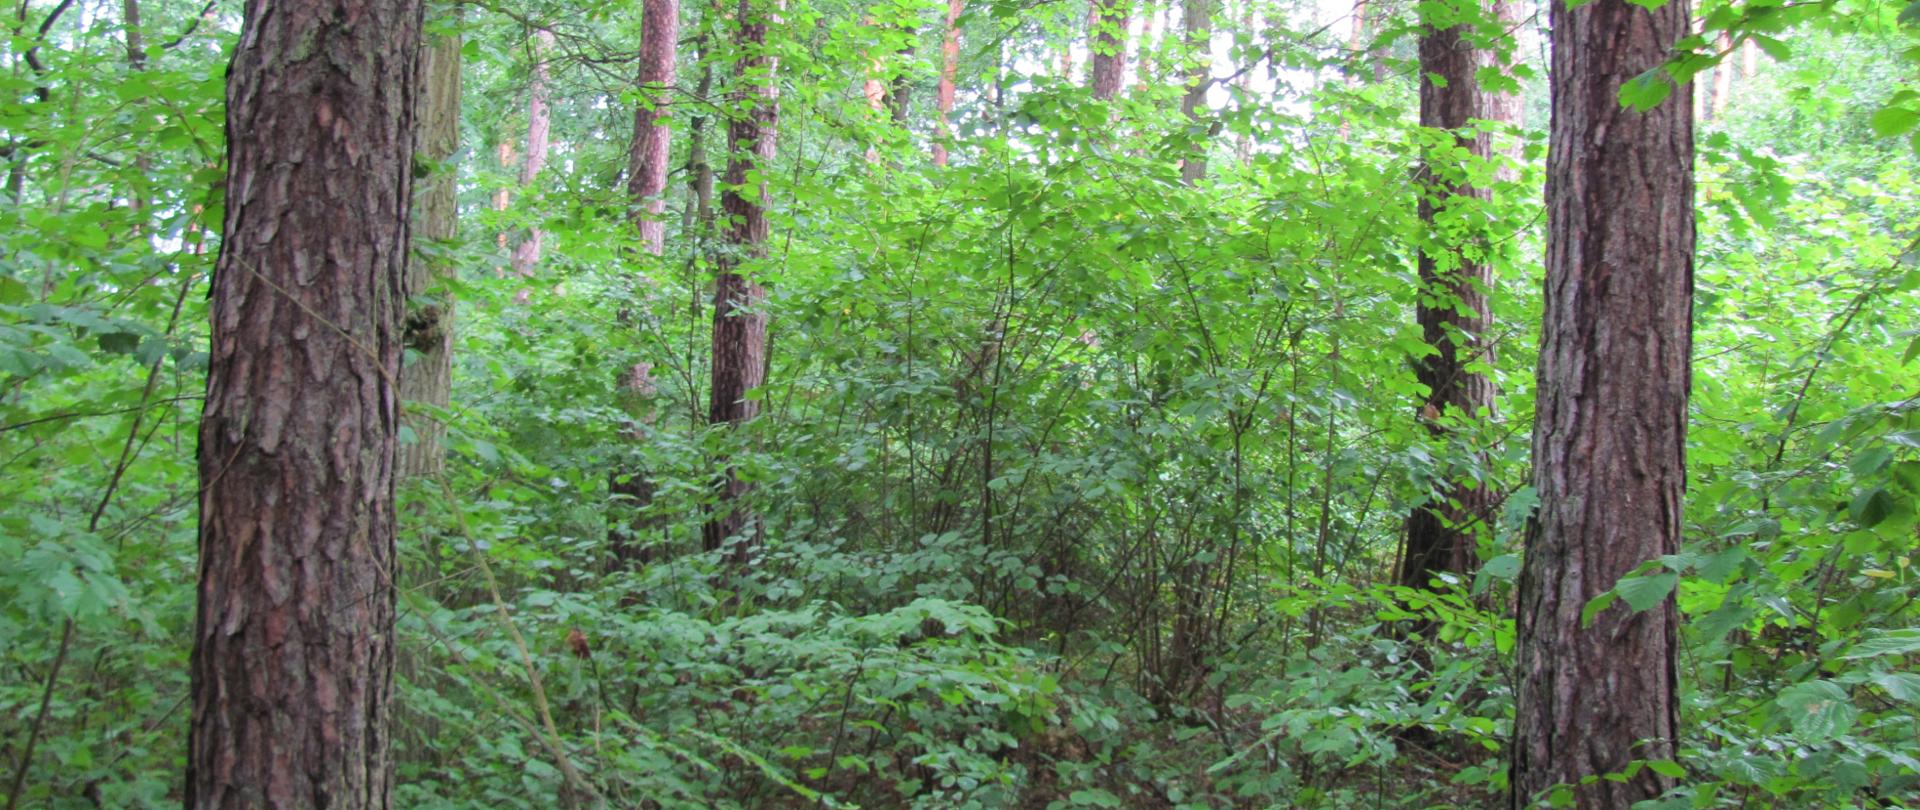 Widok na fragment lasu - na pierwszym planie pnie sosen, głębiej gęsty podszyt i pnie innych drzew